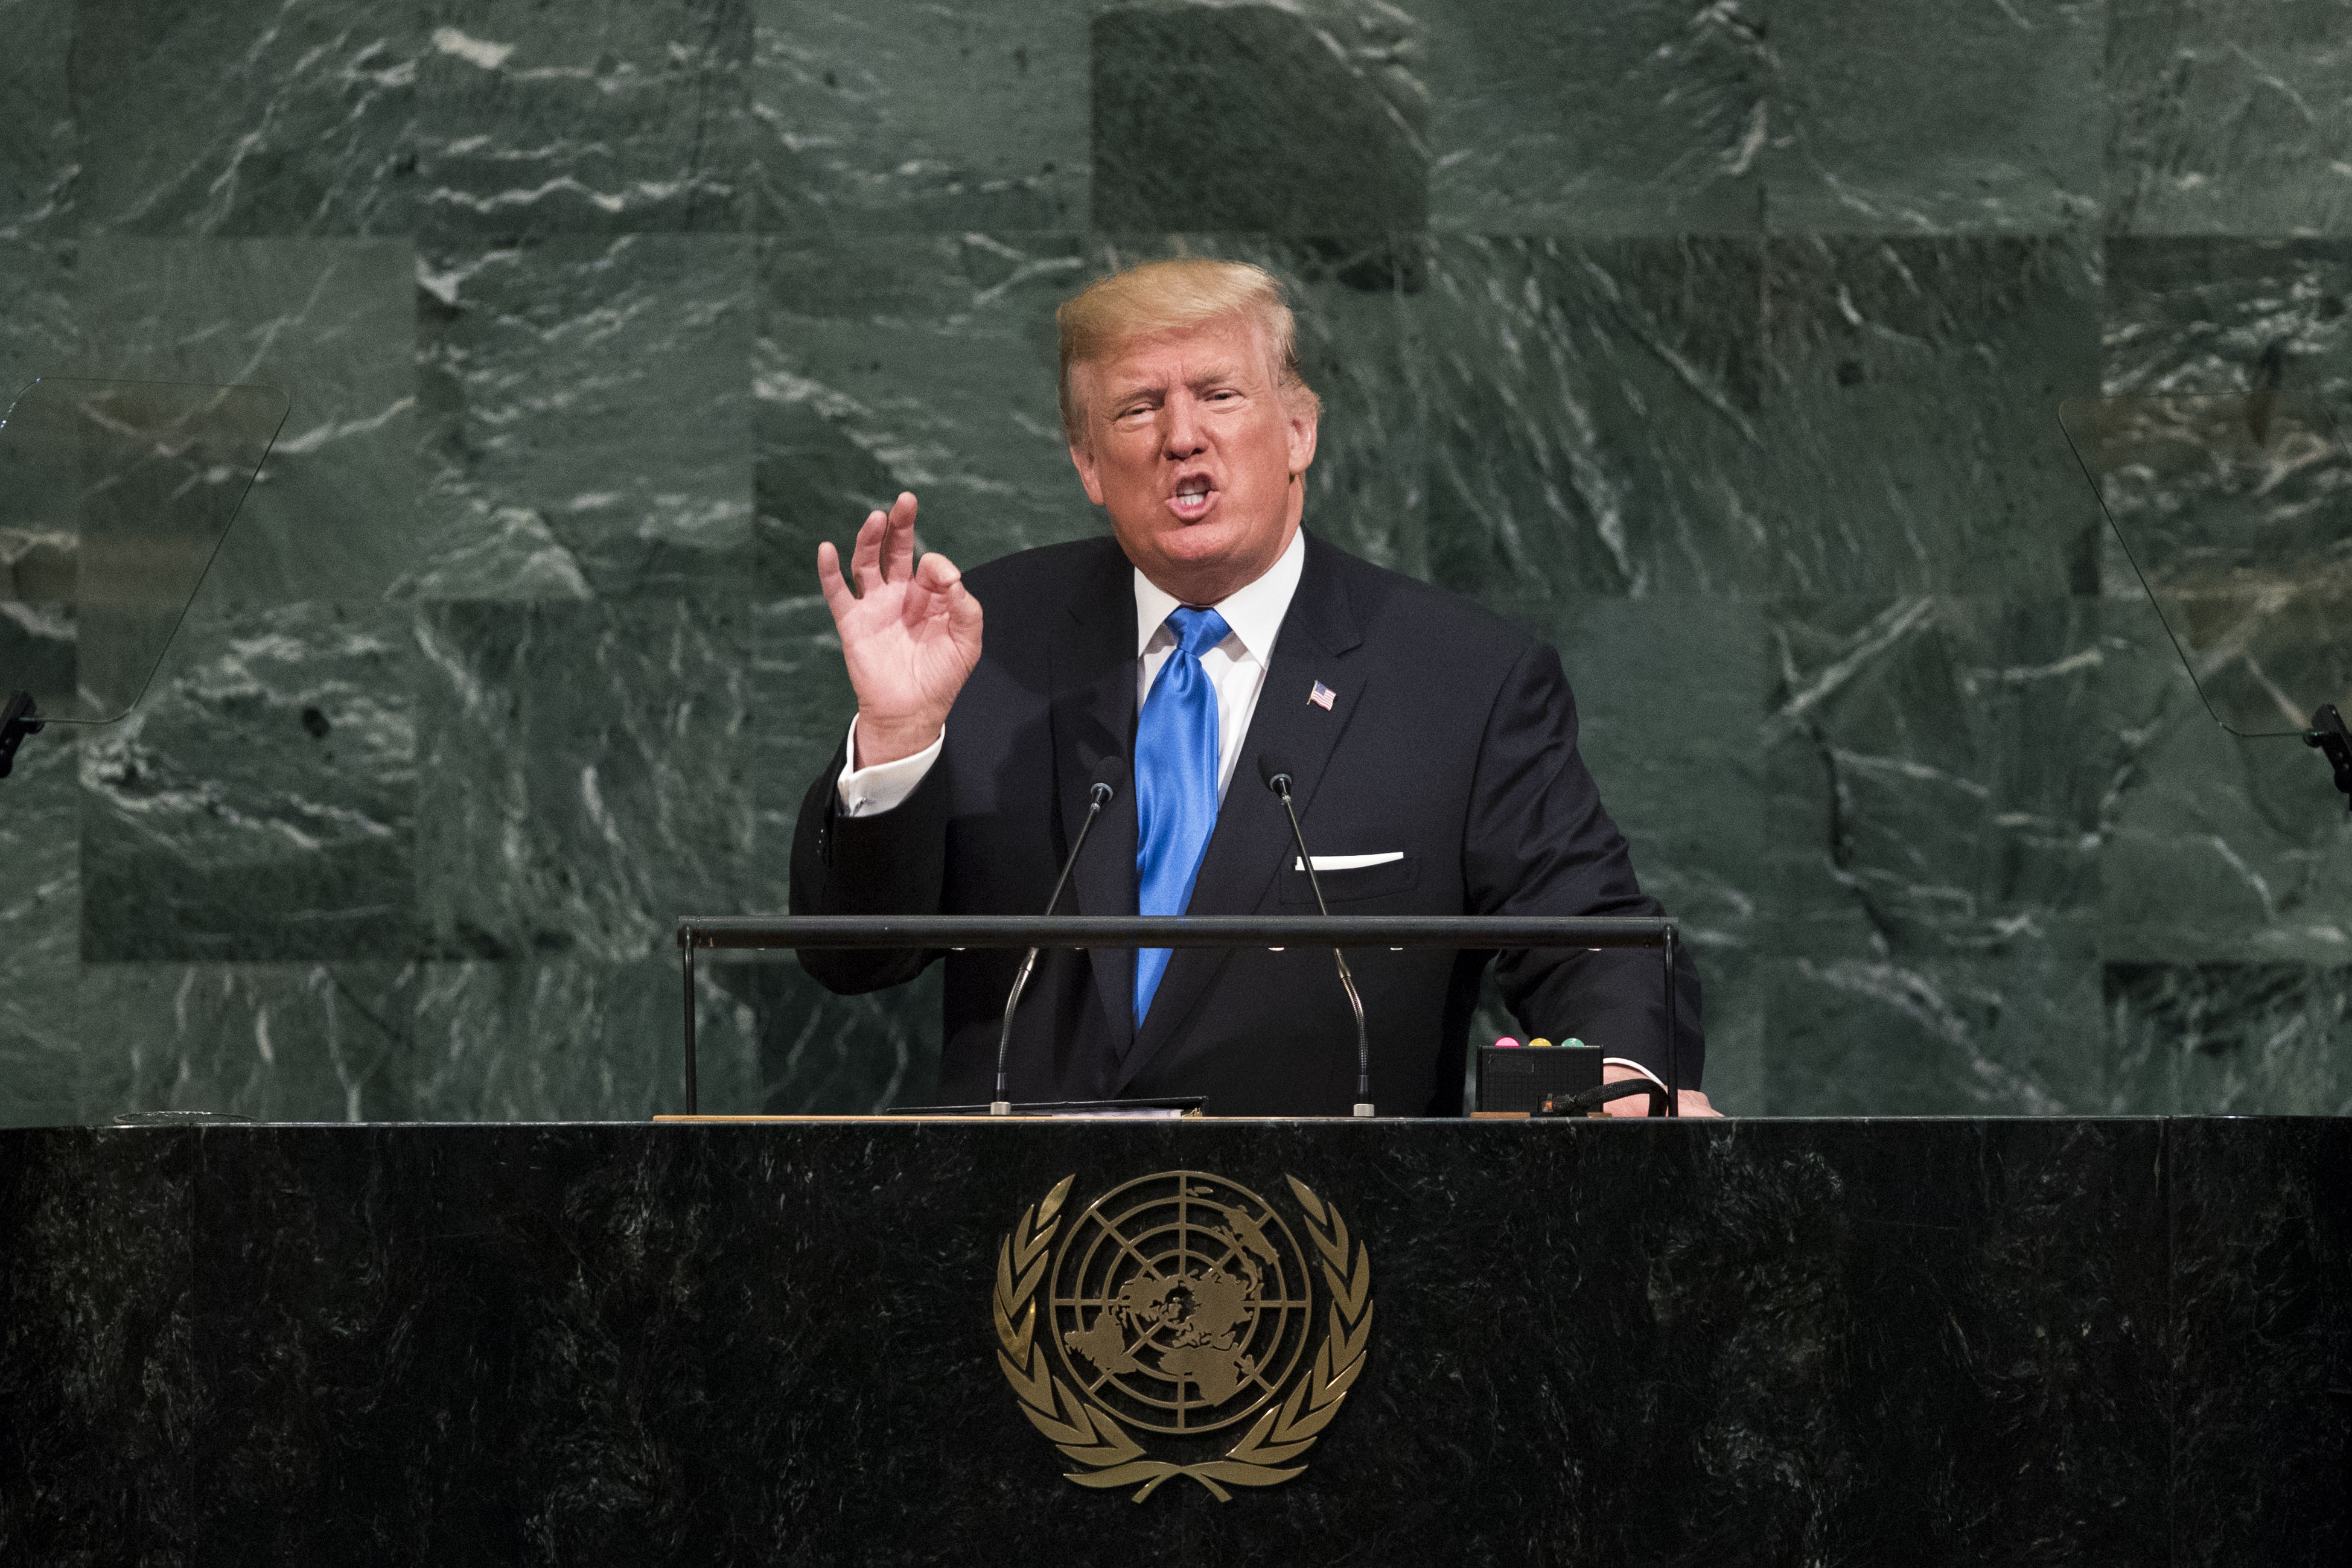 Donald Trump UN speech, Donald Trump UN, Donald Trump UN video